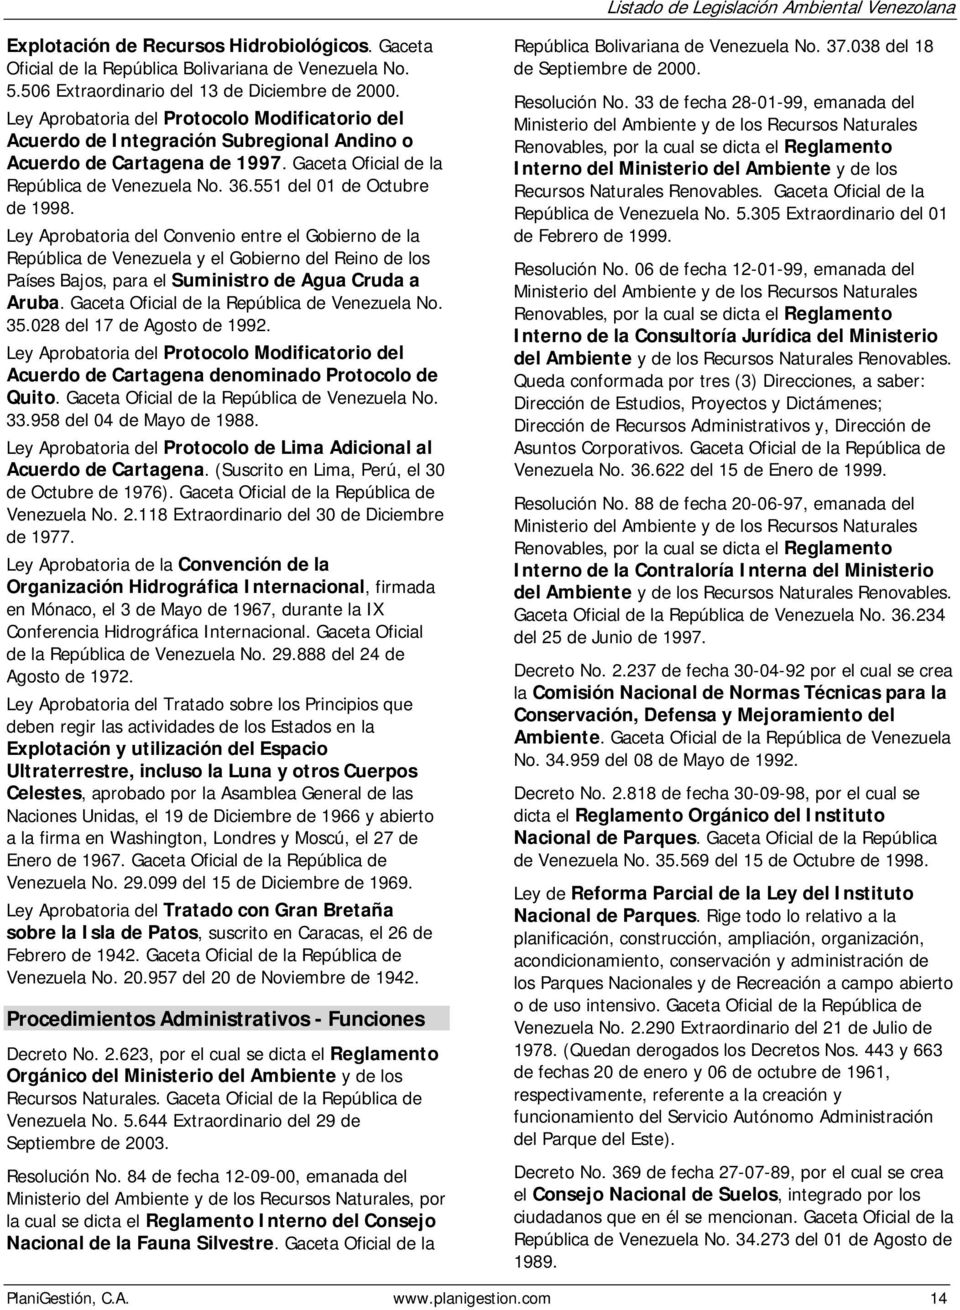 551 del 01 de Octubre de 1998. Ley Aprobatoria del Convenio entre el Gobierno de la República de Venezuela y el Gobierno del Reino de los Países Bajos, para el Suministro de Agua Cruda a Aruba.